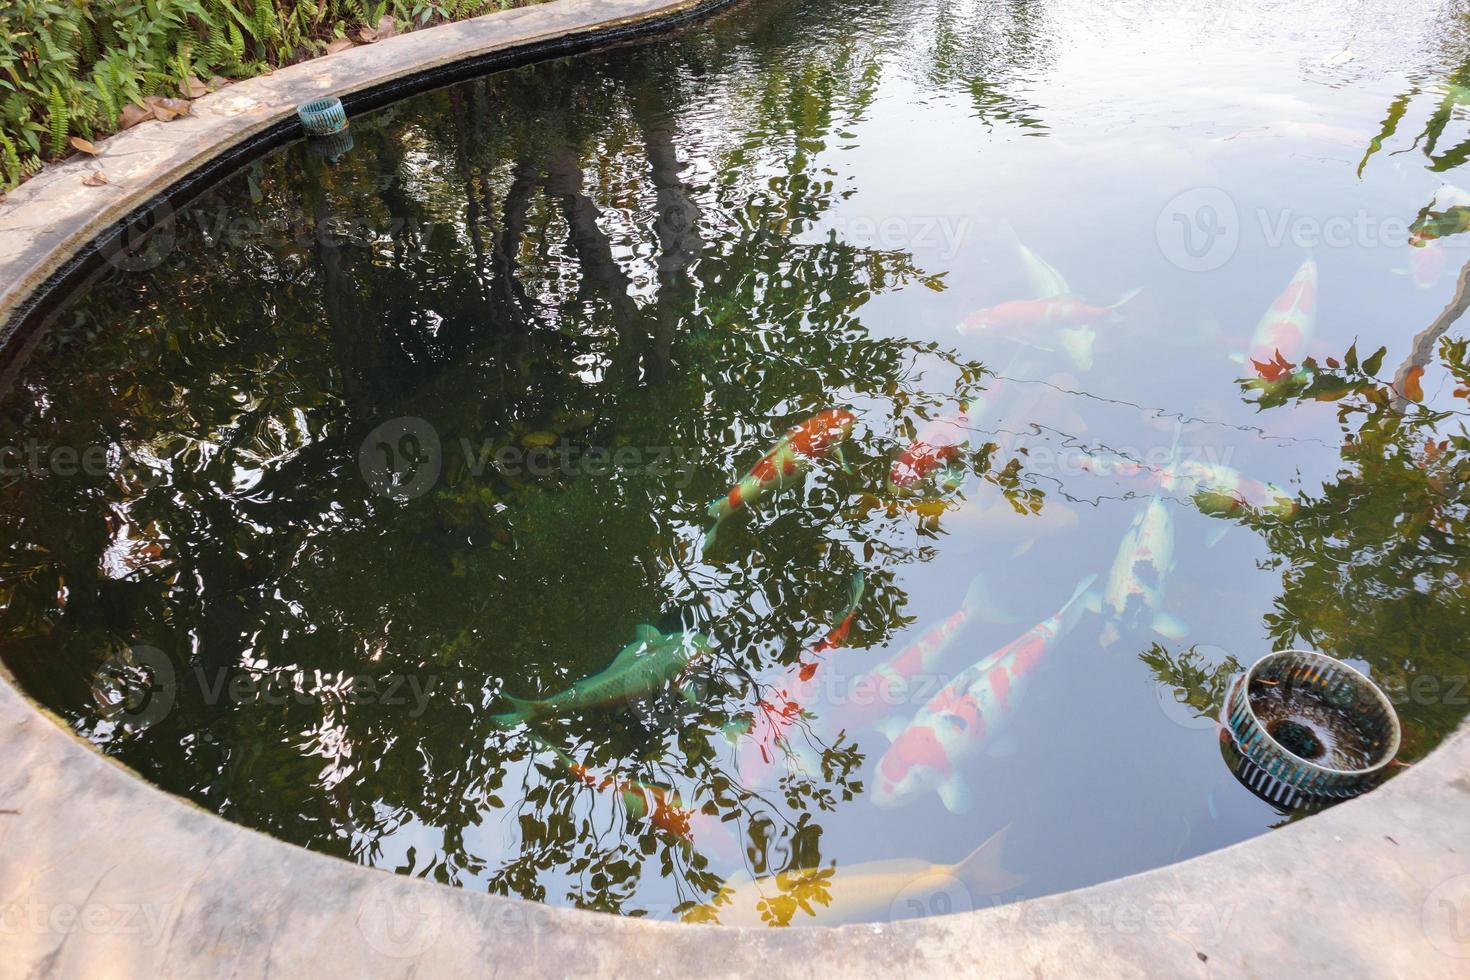 peixe koi na lagoa do jardim foto